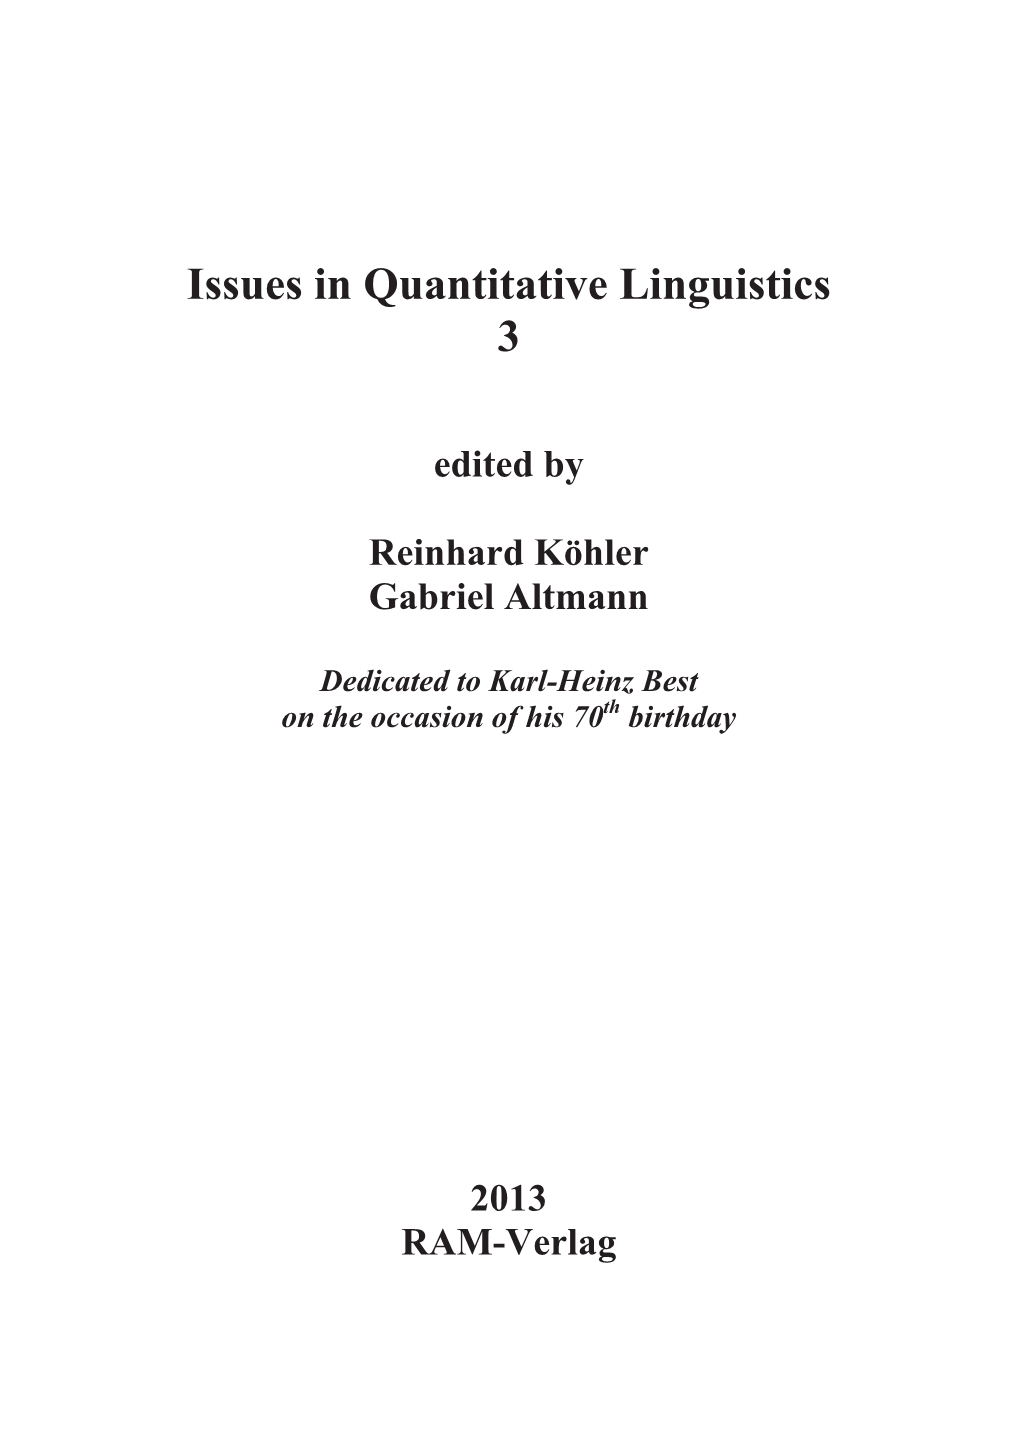 Problems in Quantitative Linguistics